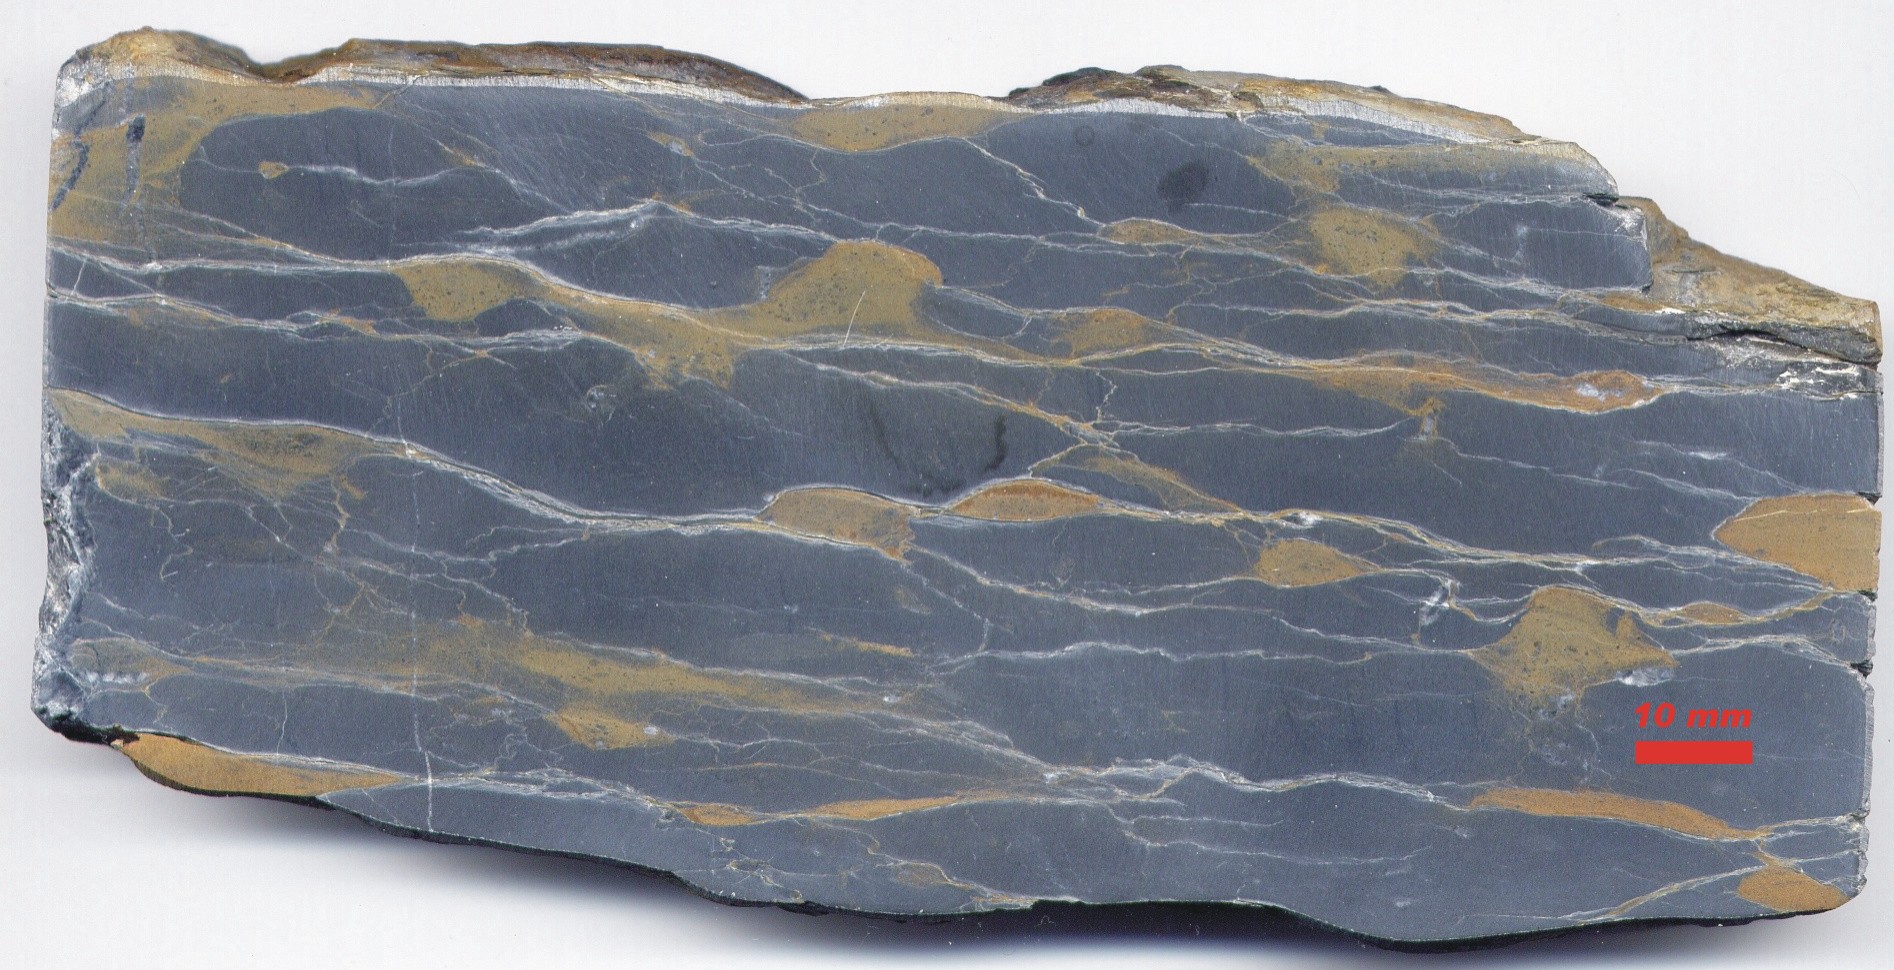 Горные породы известняк слюда. Бирюза известняк скала. Carbonate Rocks. Mudstone Rock. Mudstone (limestone).